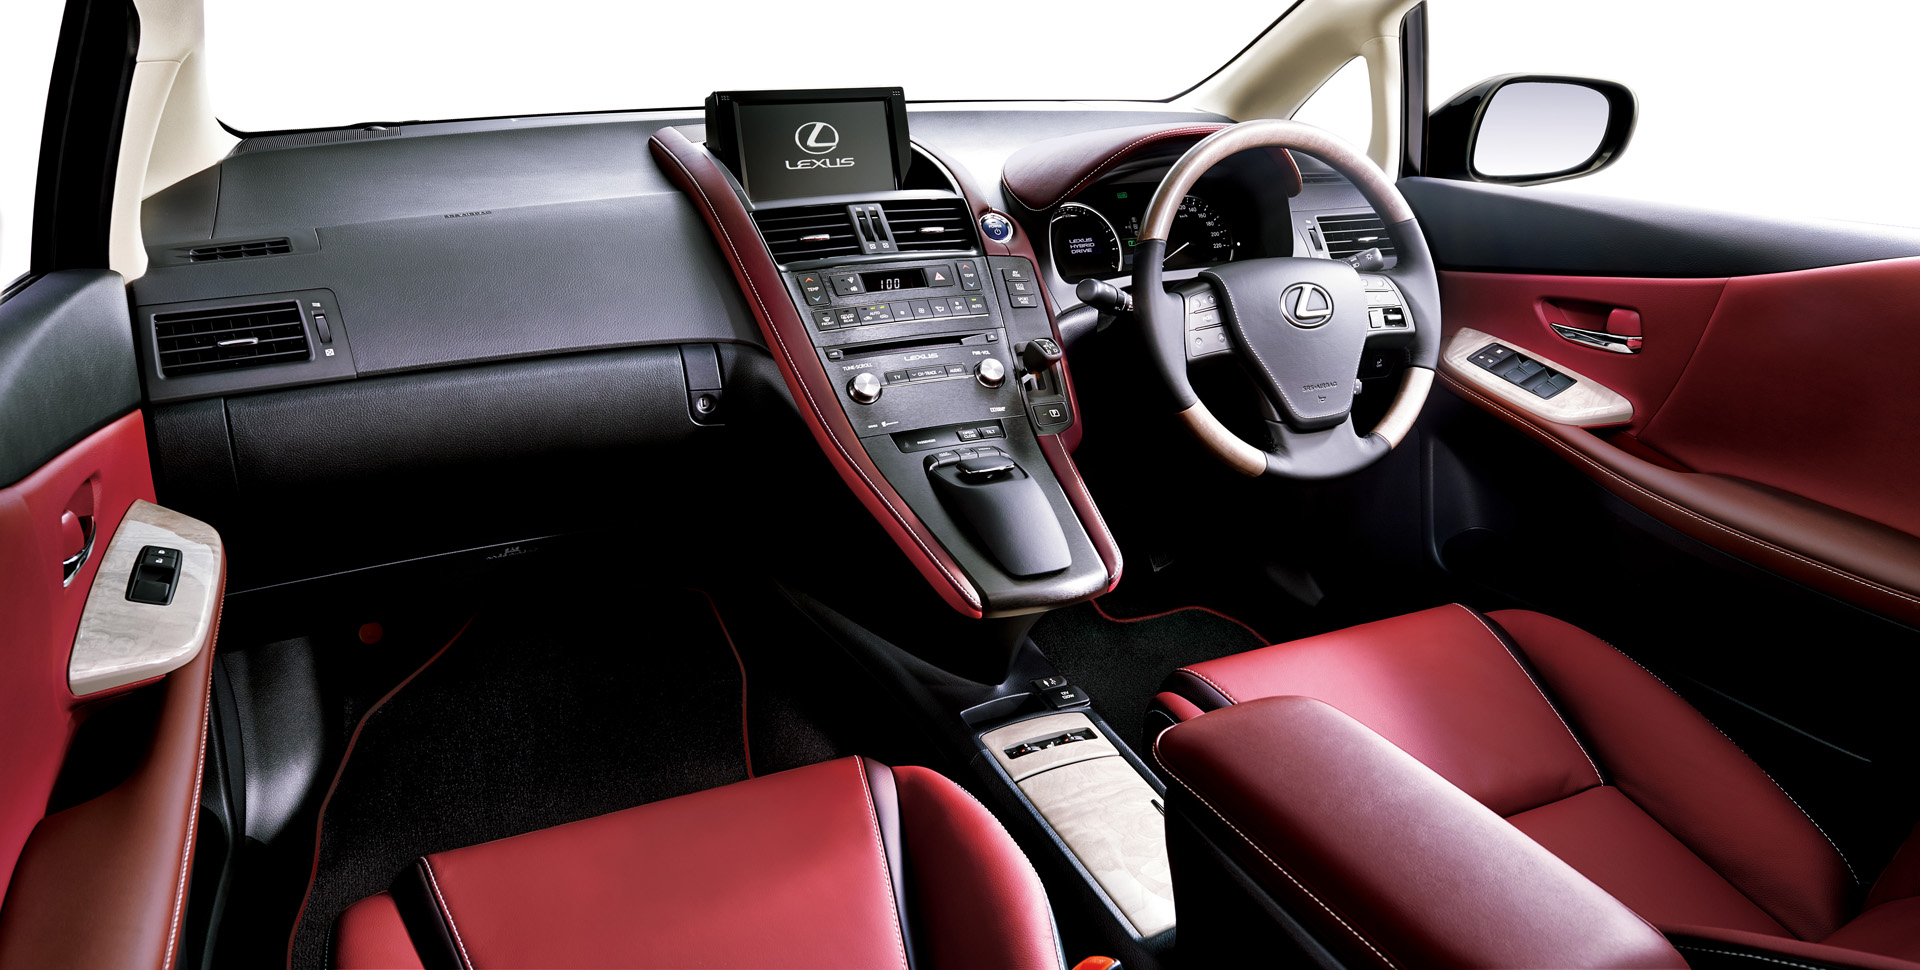 HS250h 特別仕様車 “Harmonious Leather Interior II” (レッドスピネル) 〈オプション装着車〉